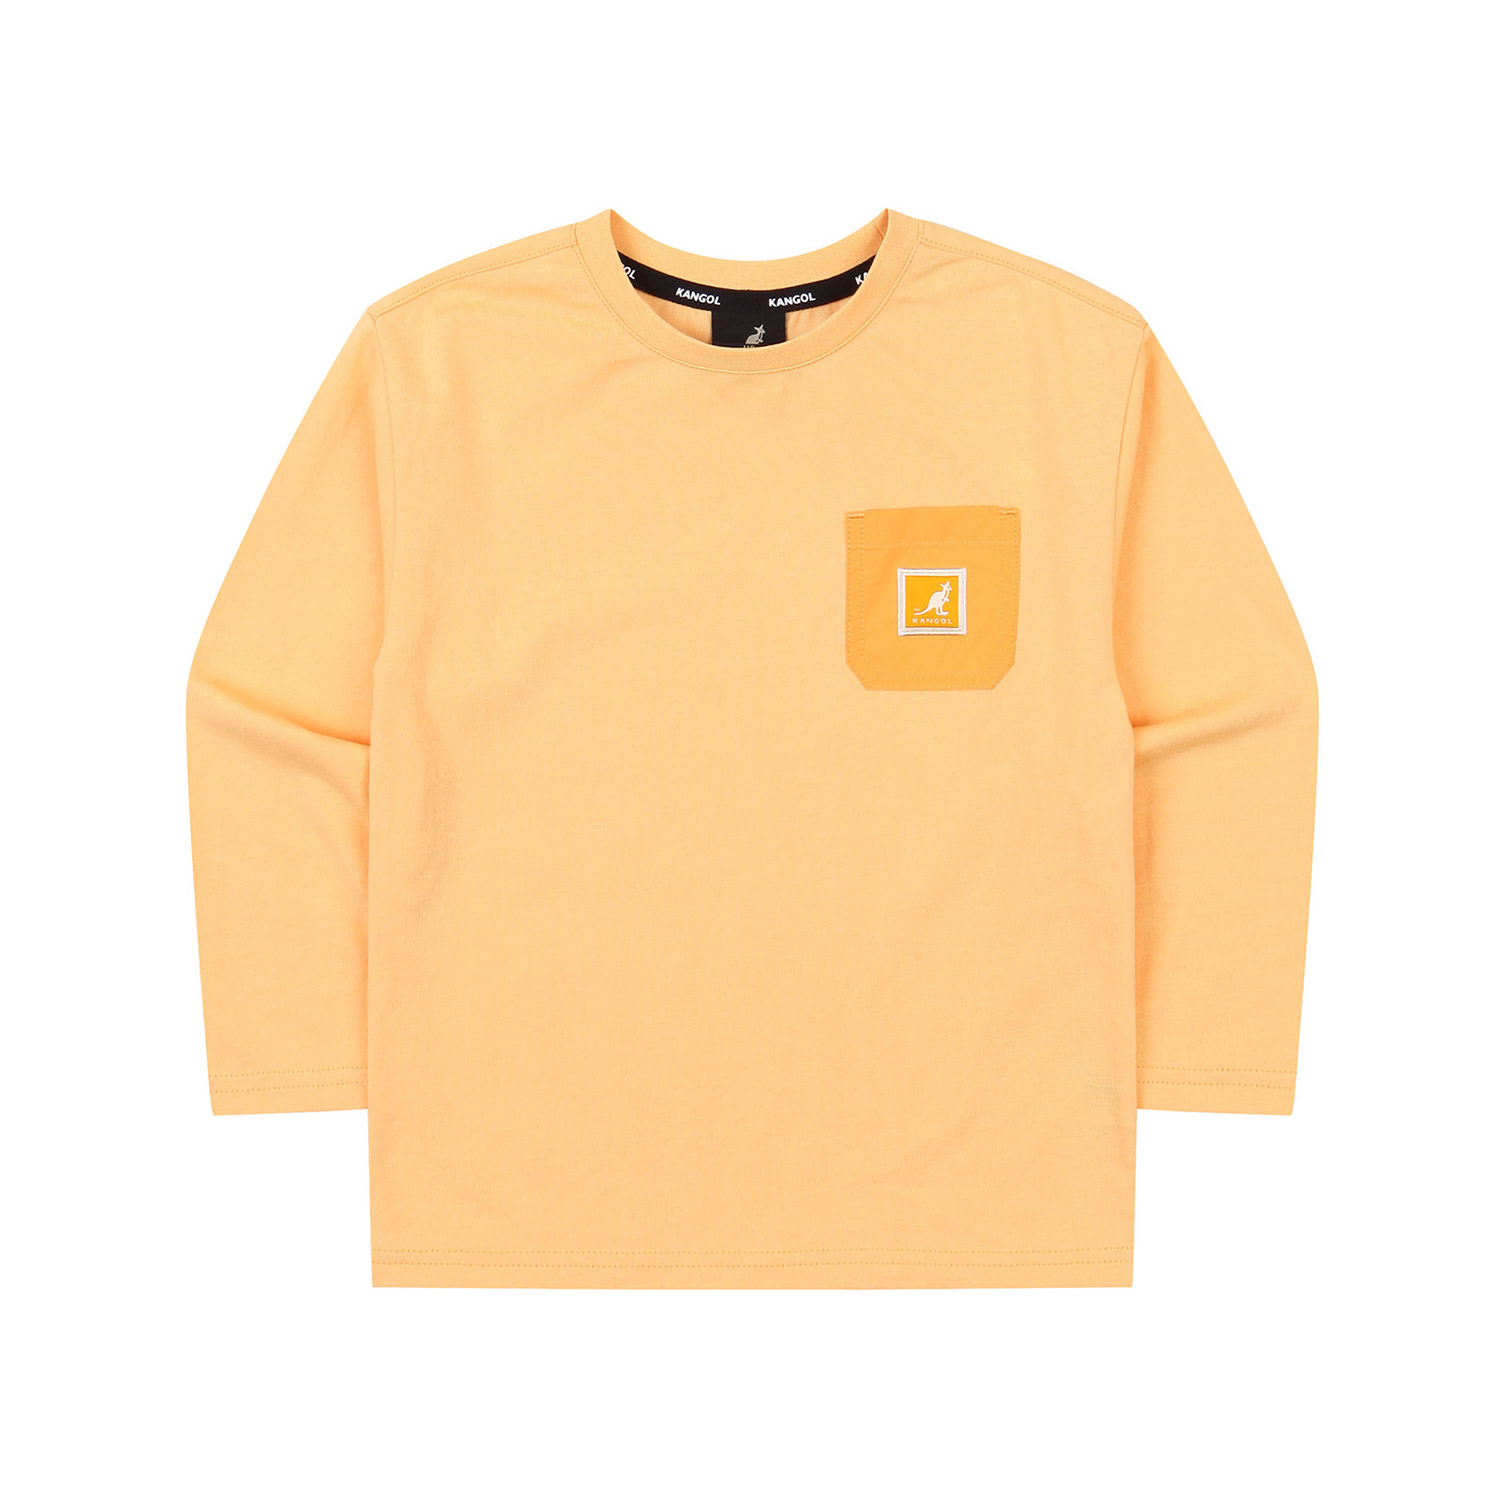 포켓 로고 라벨 티셔츠 OA 0002 오렌지